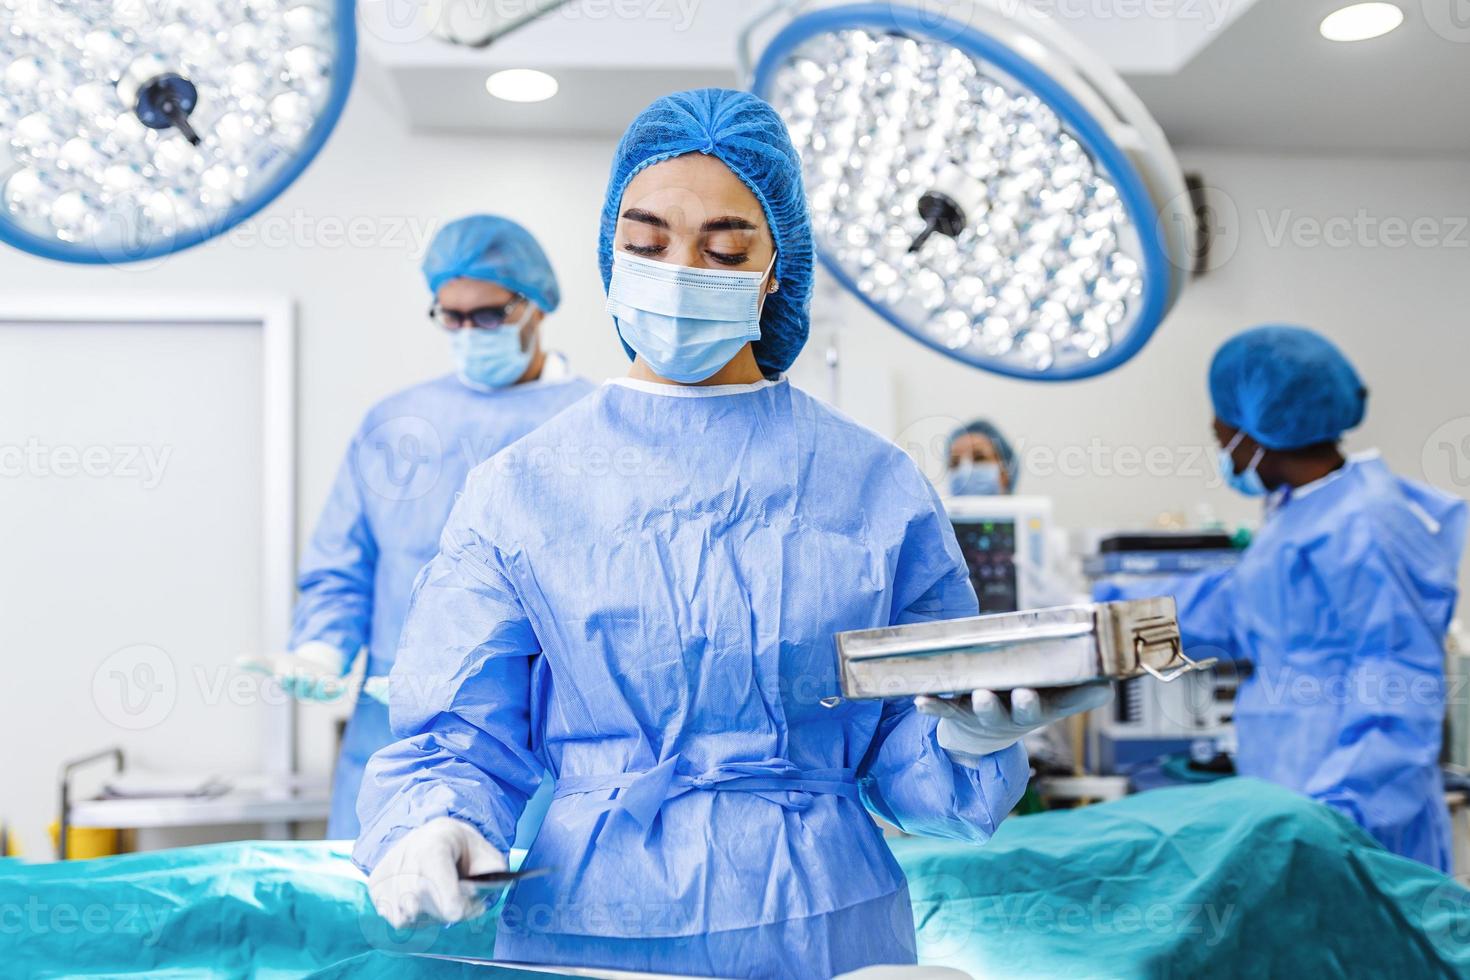 chirurgienne en uniforme chirurgical prenant des instruments chirurgicaux au bloc opératoire. jeune femme médecin dans le théâtre d'opération de l'hôpital photo